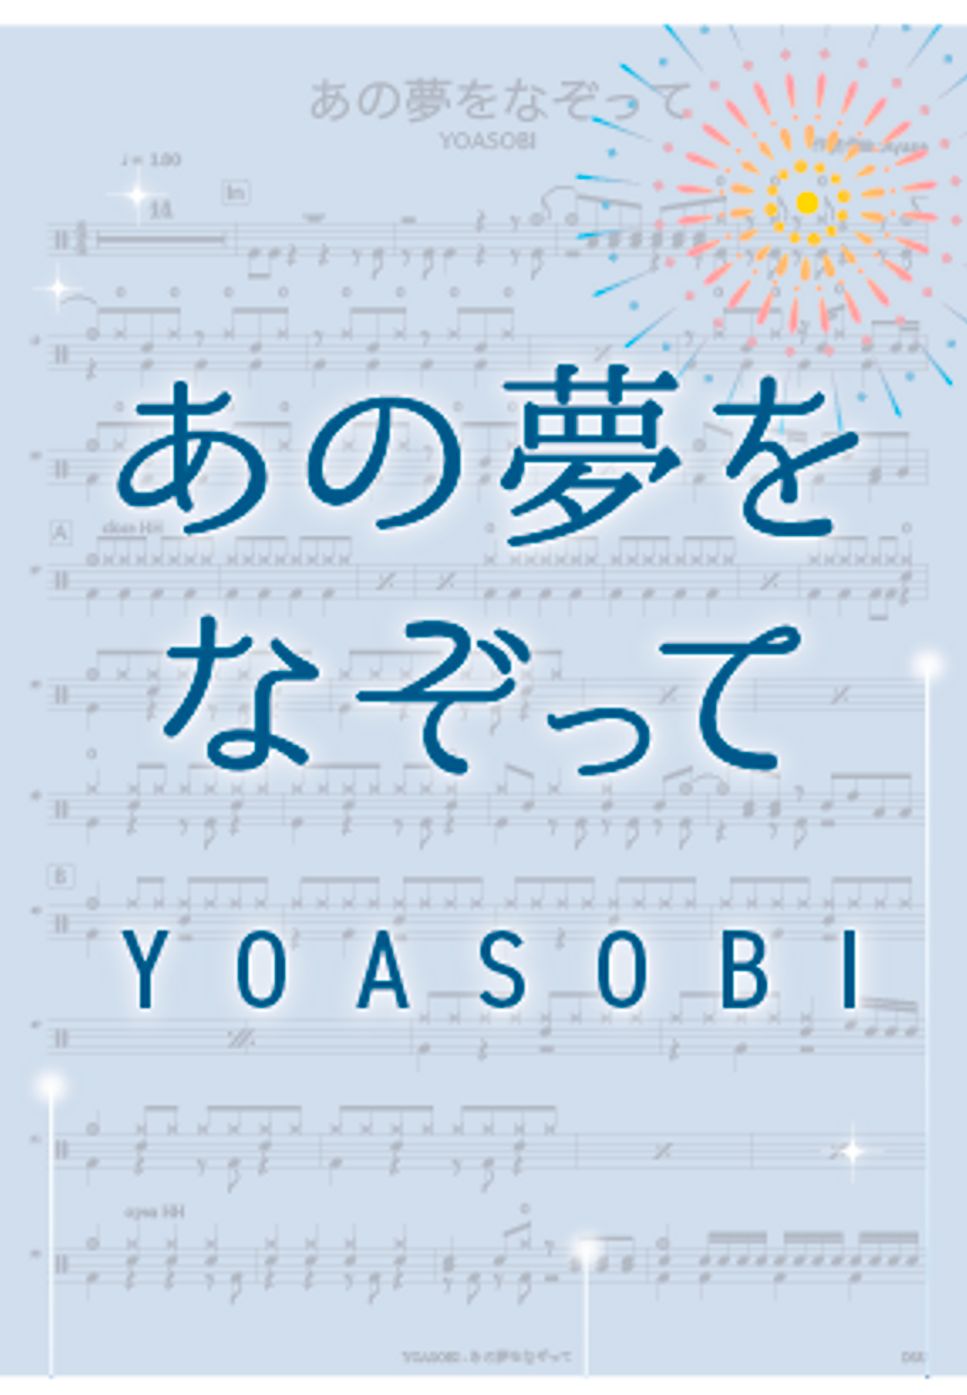 YOASOBI - あの夢をなぞって by DSU